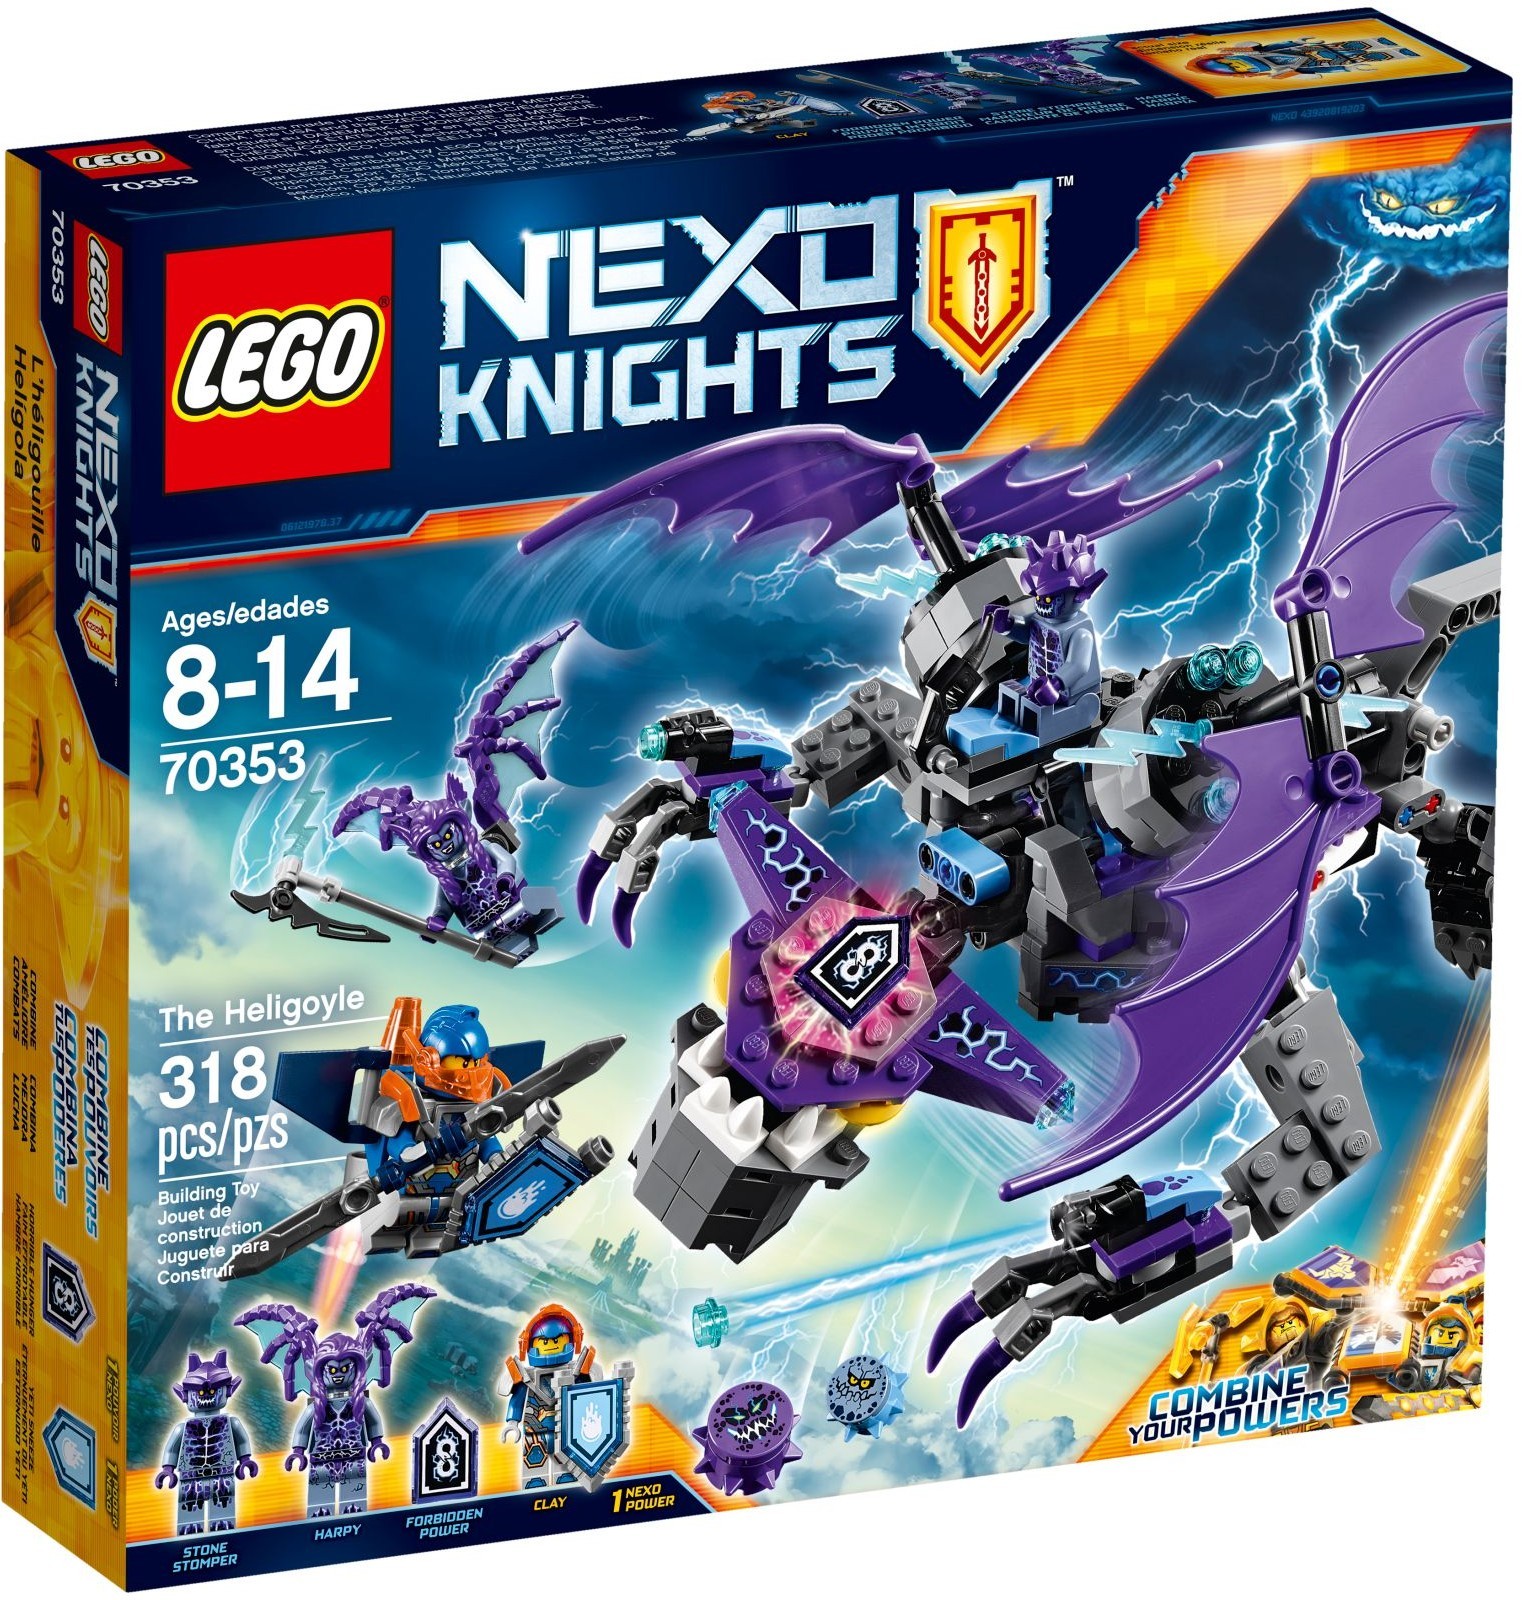 70353 Nexo Knights The Heligoyle